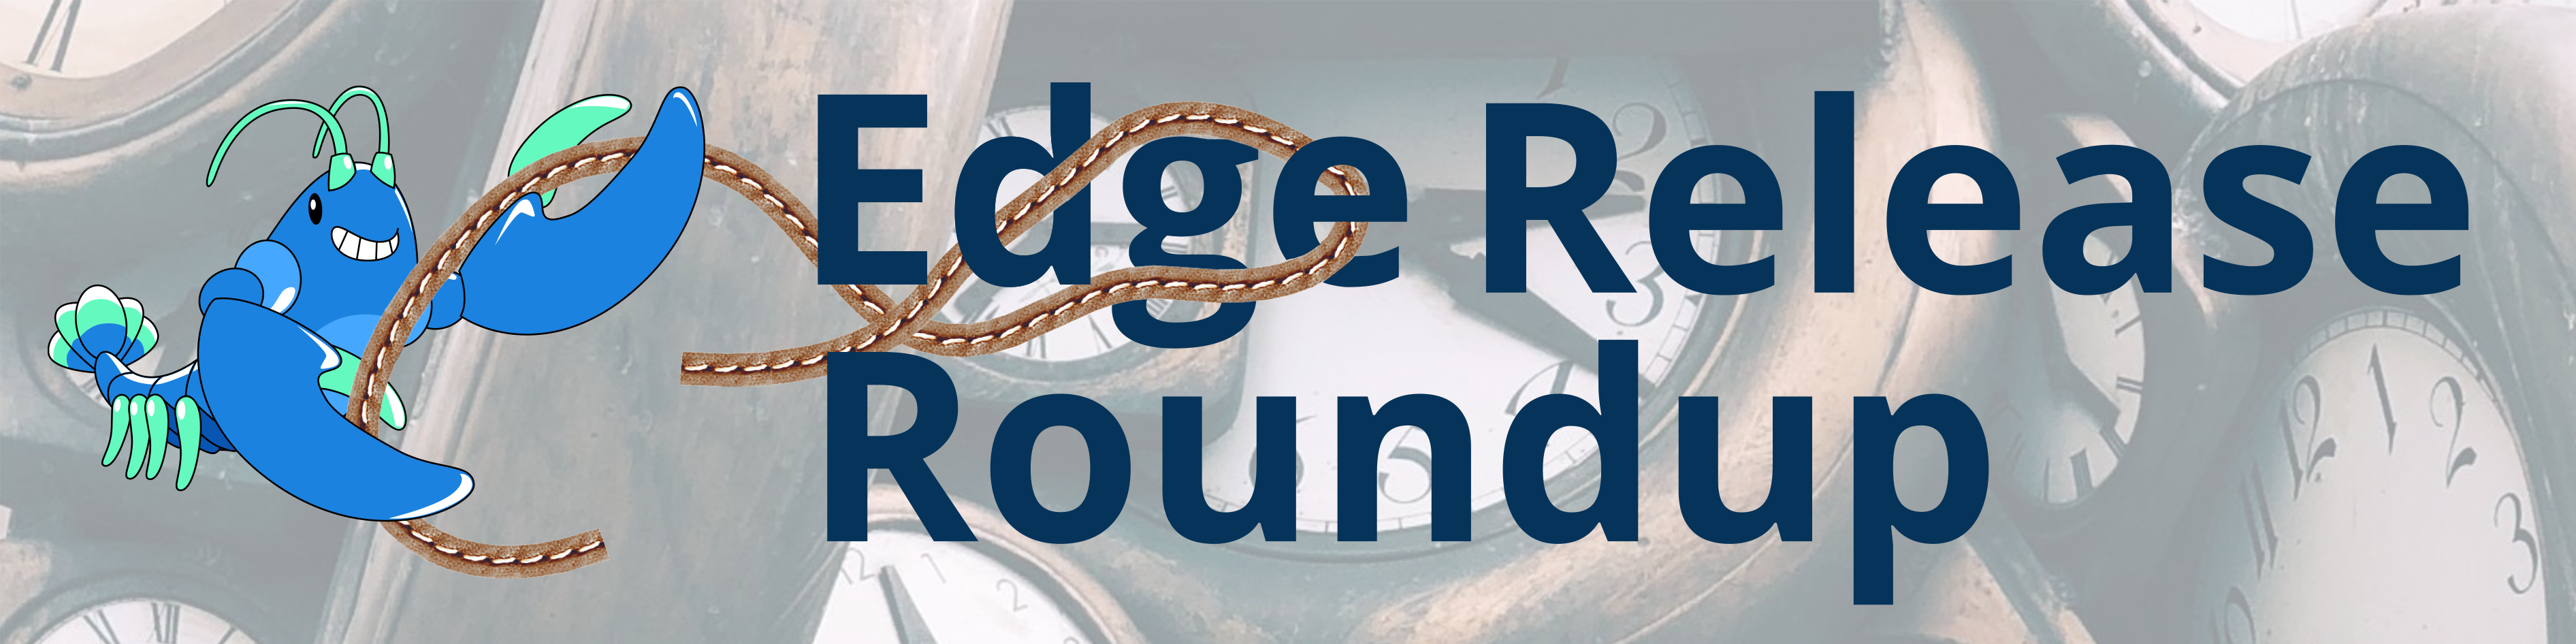 21 June Linkerd Edge Release Roundup